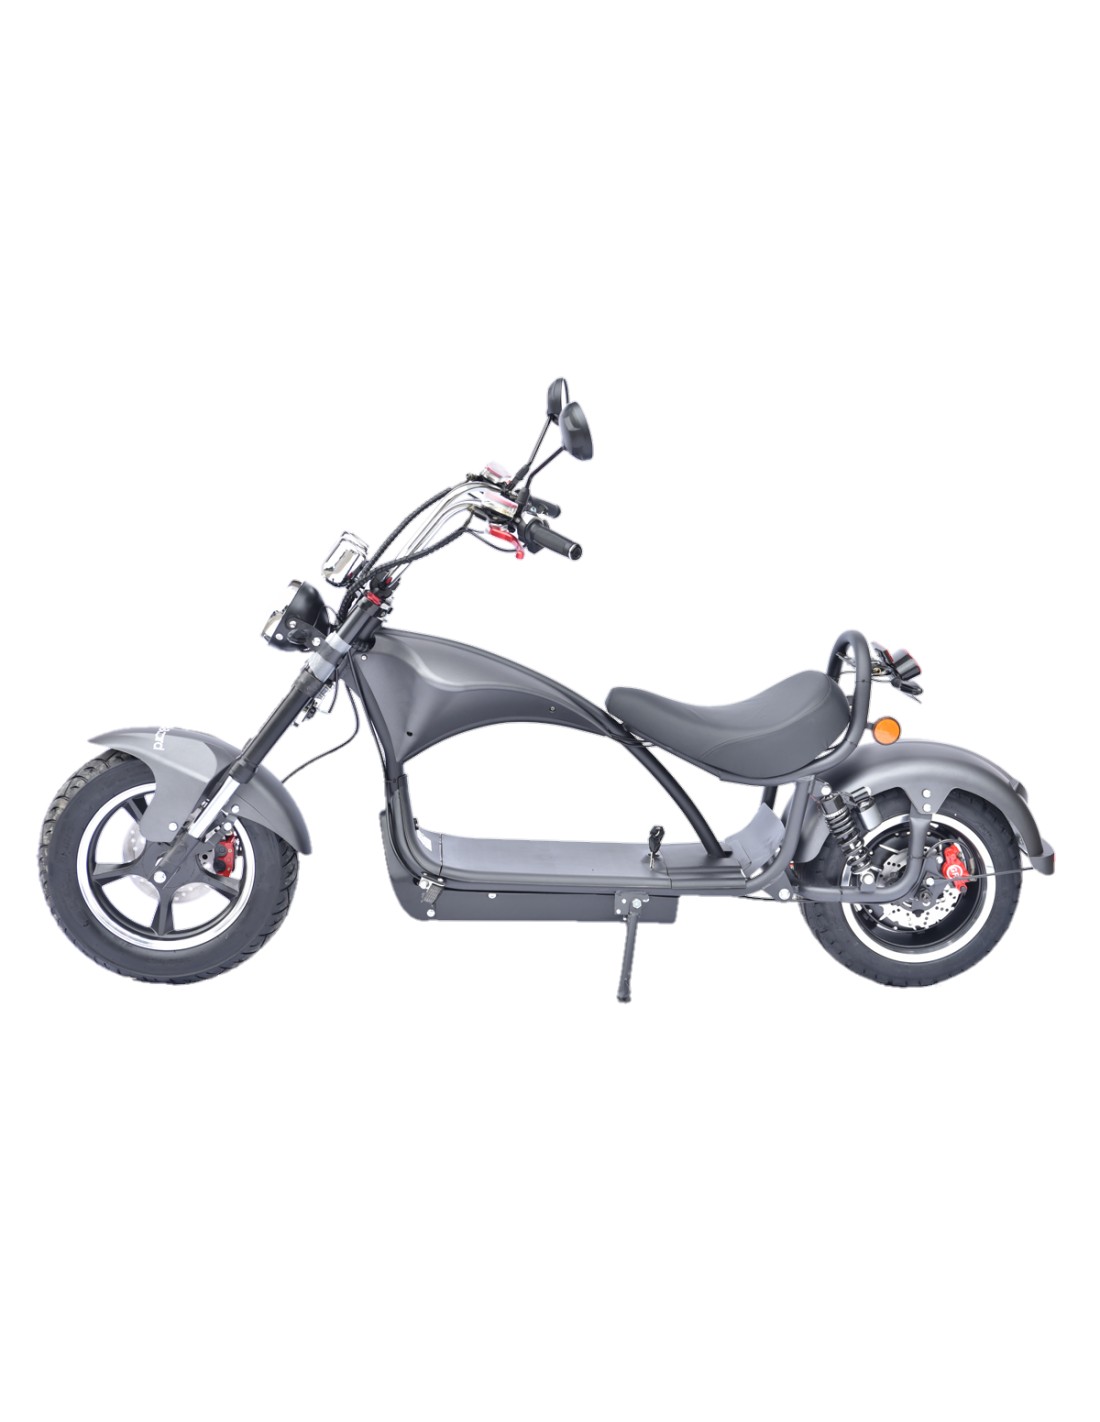 Toutes les motos électriques homologuées du marché